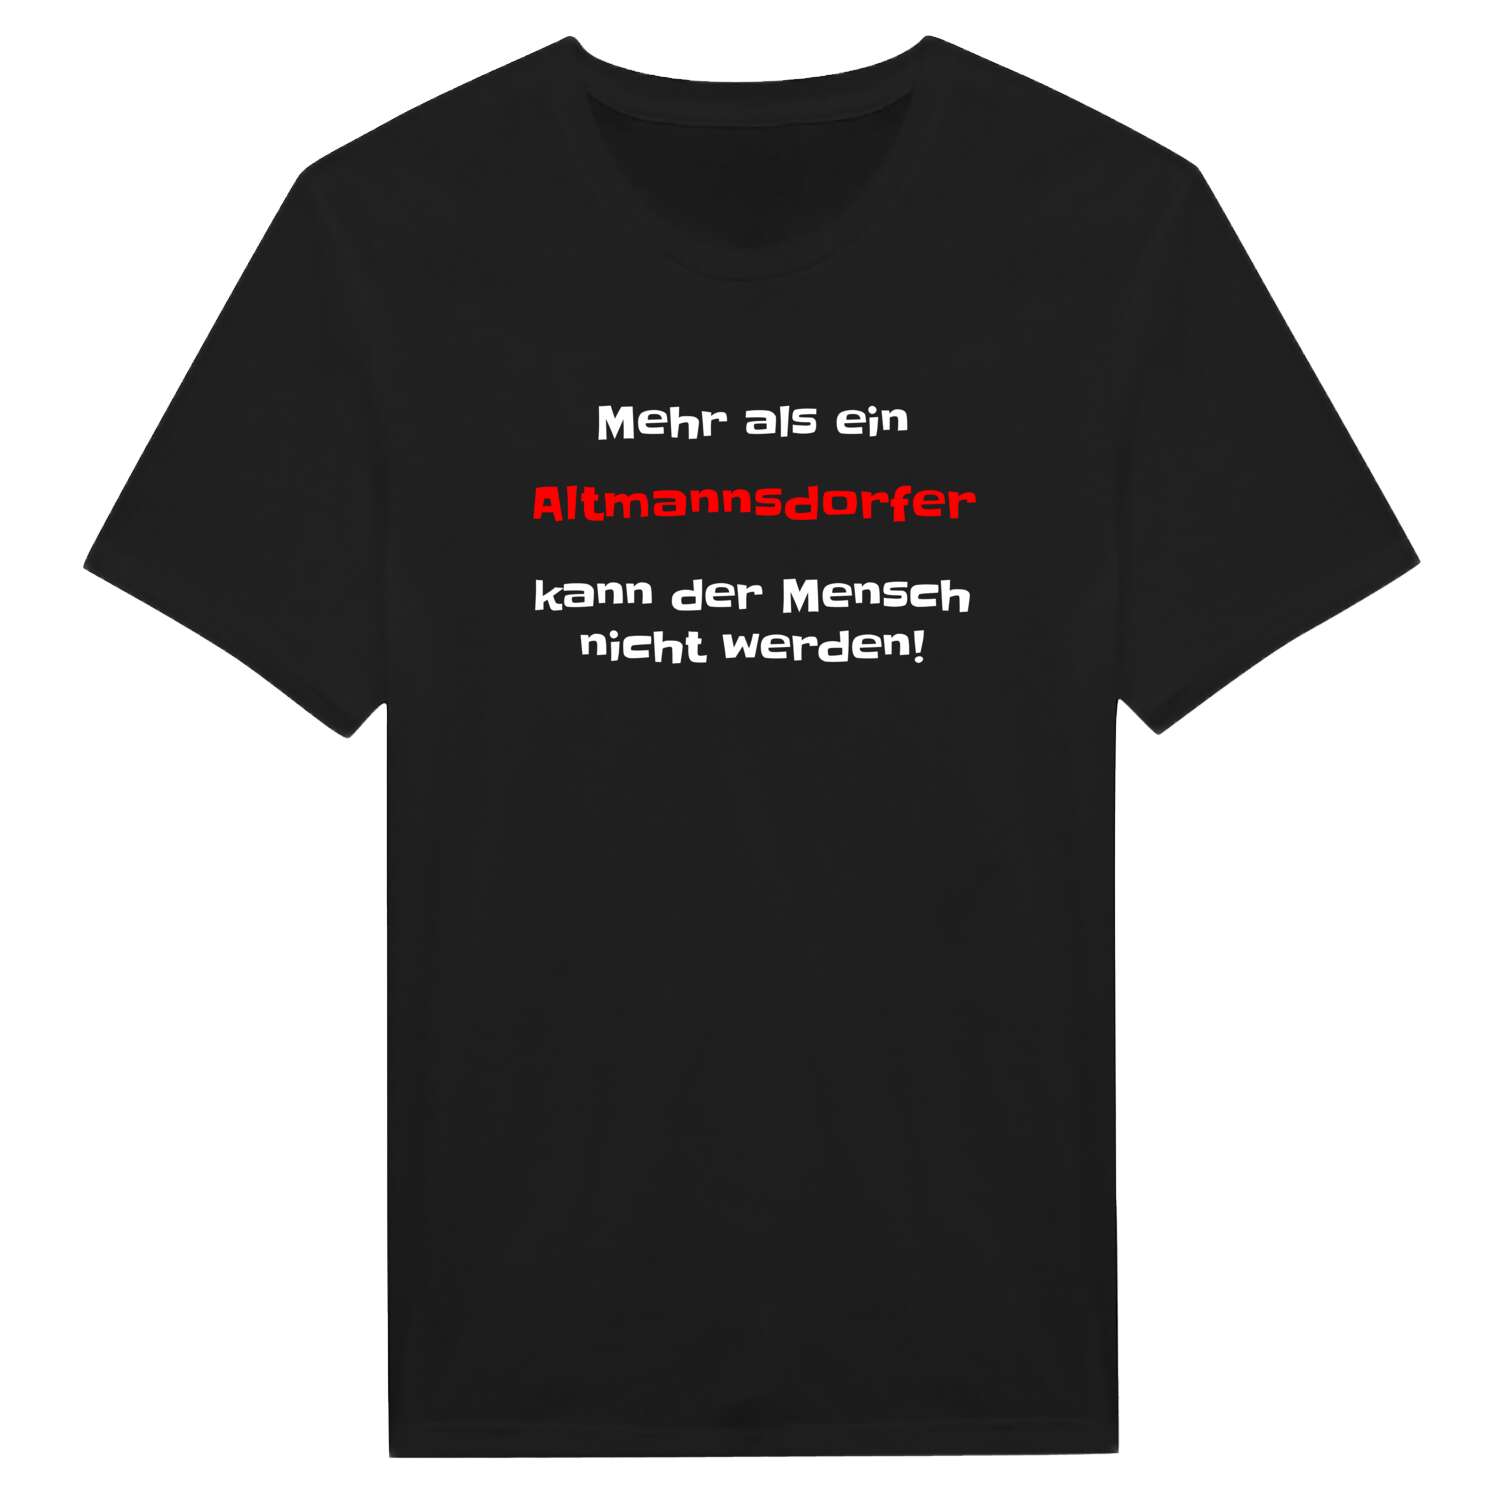 Altmannsdorf T-Shirt »Mehr als ein«